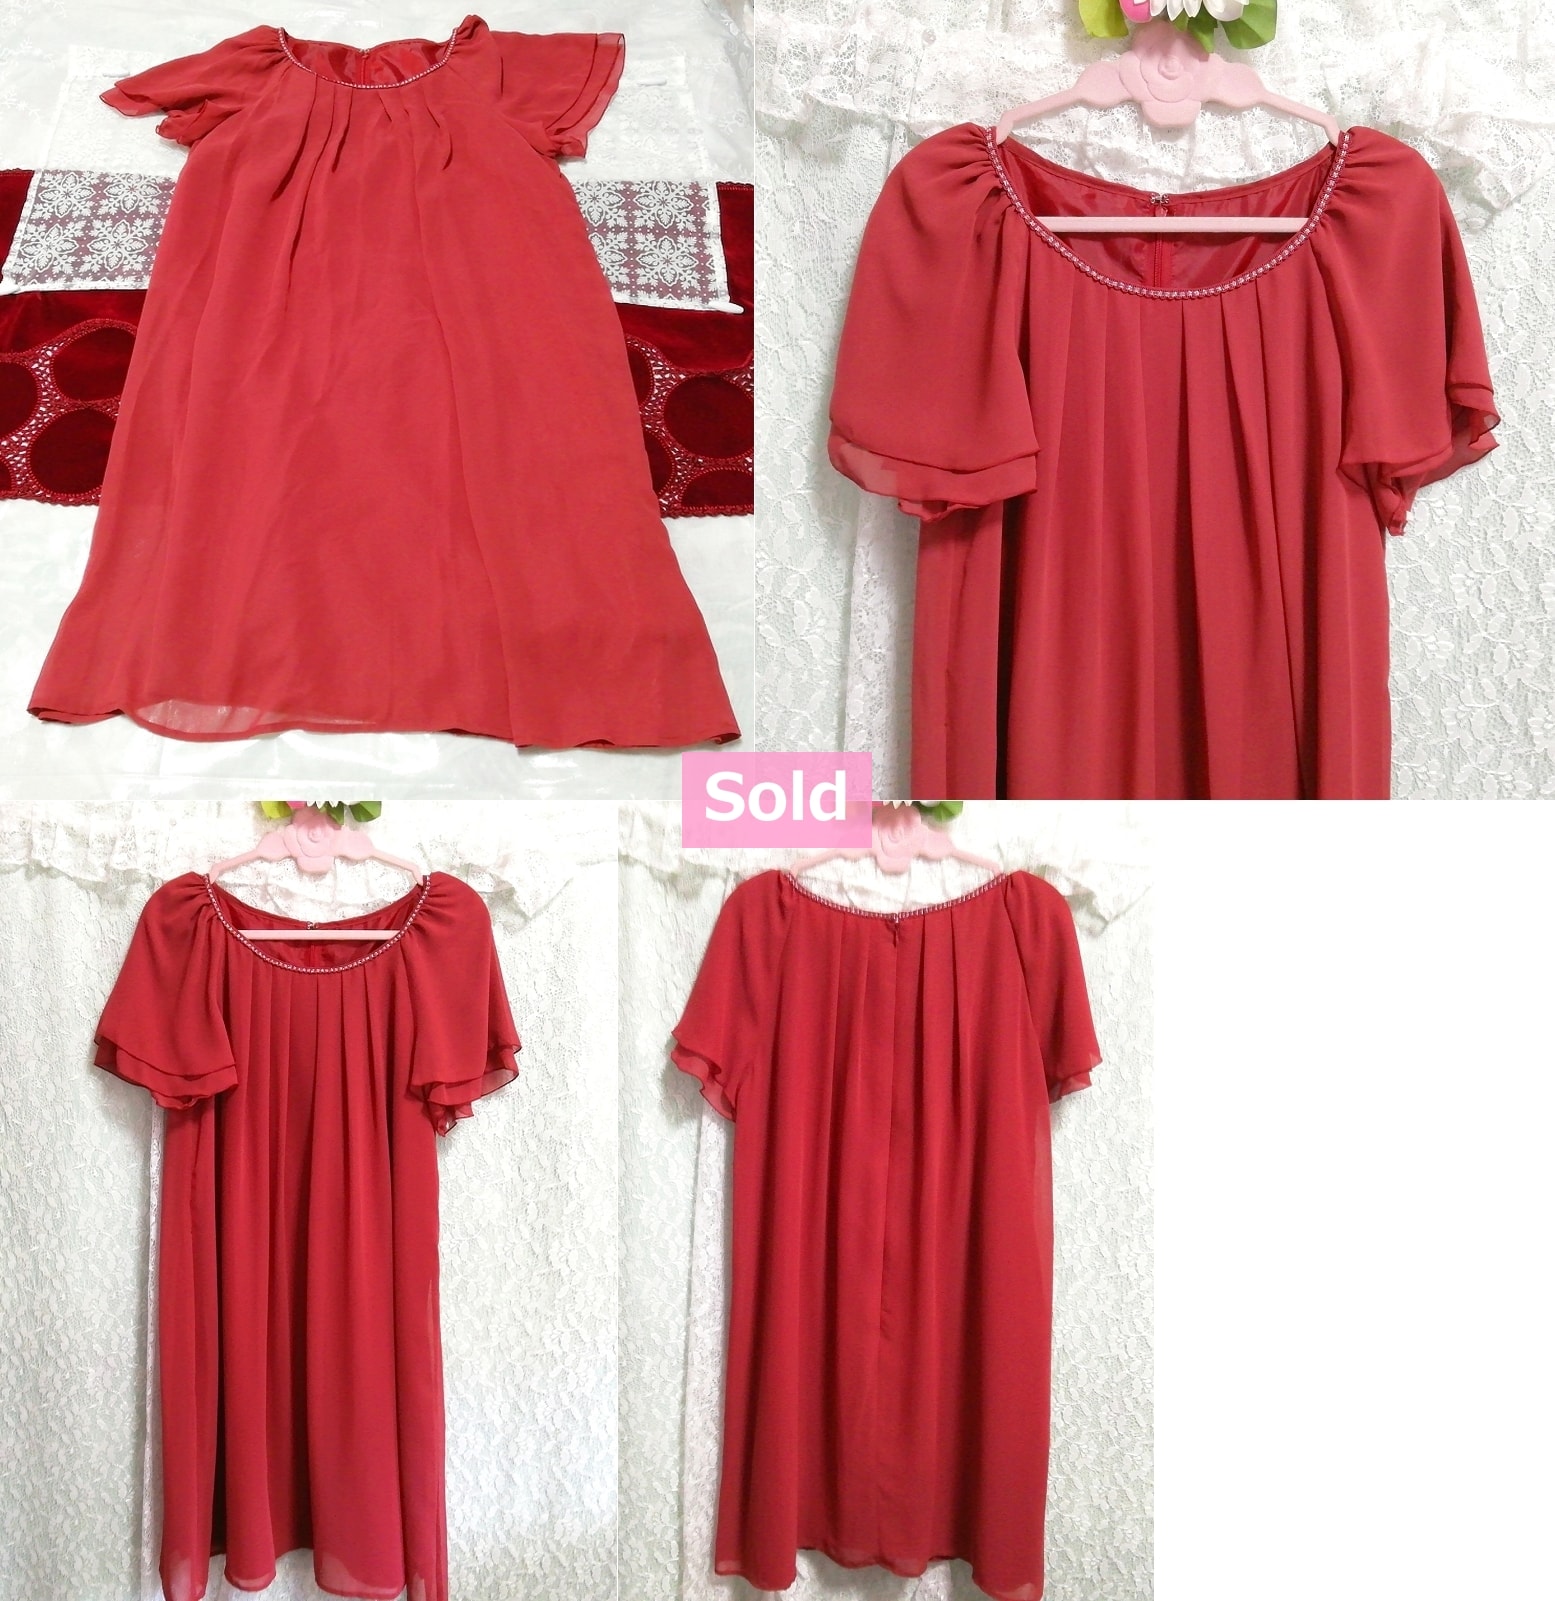 Red chiffon short sleeve long tunic negligee nightgown nightwear dress, tunic, short sleeve, l size